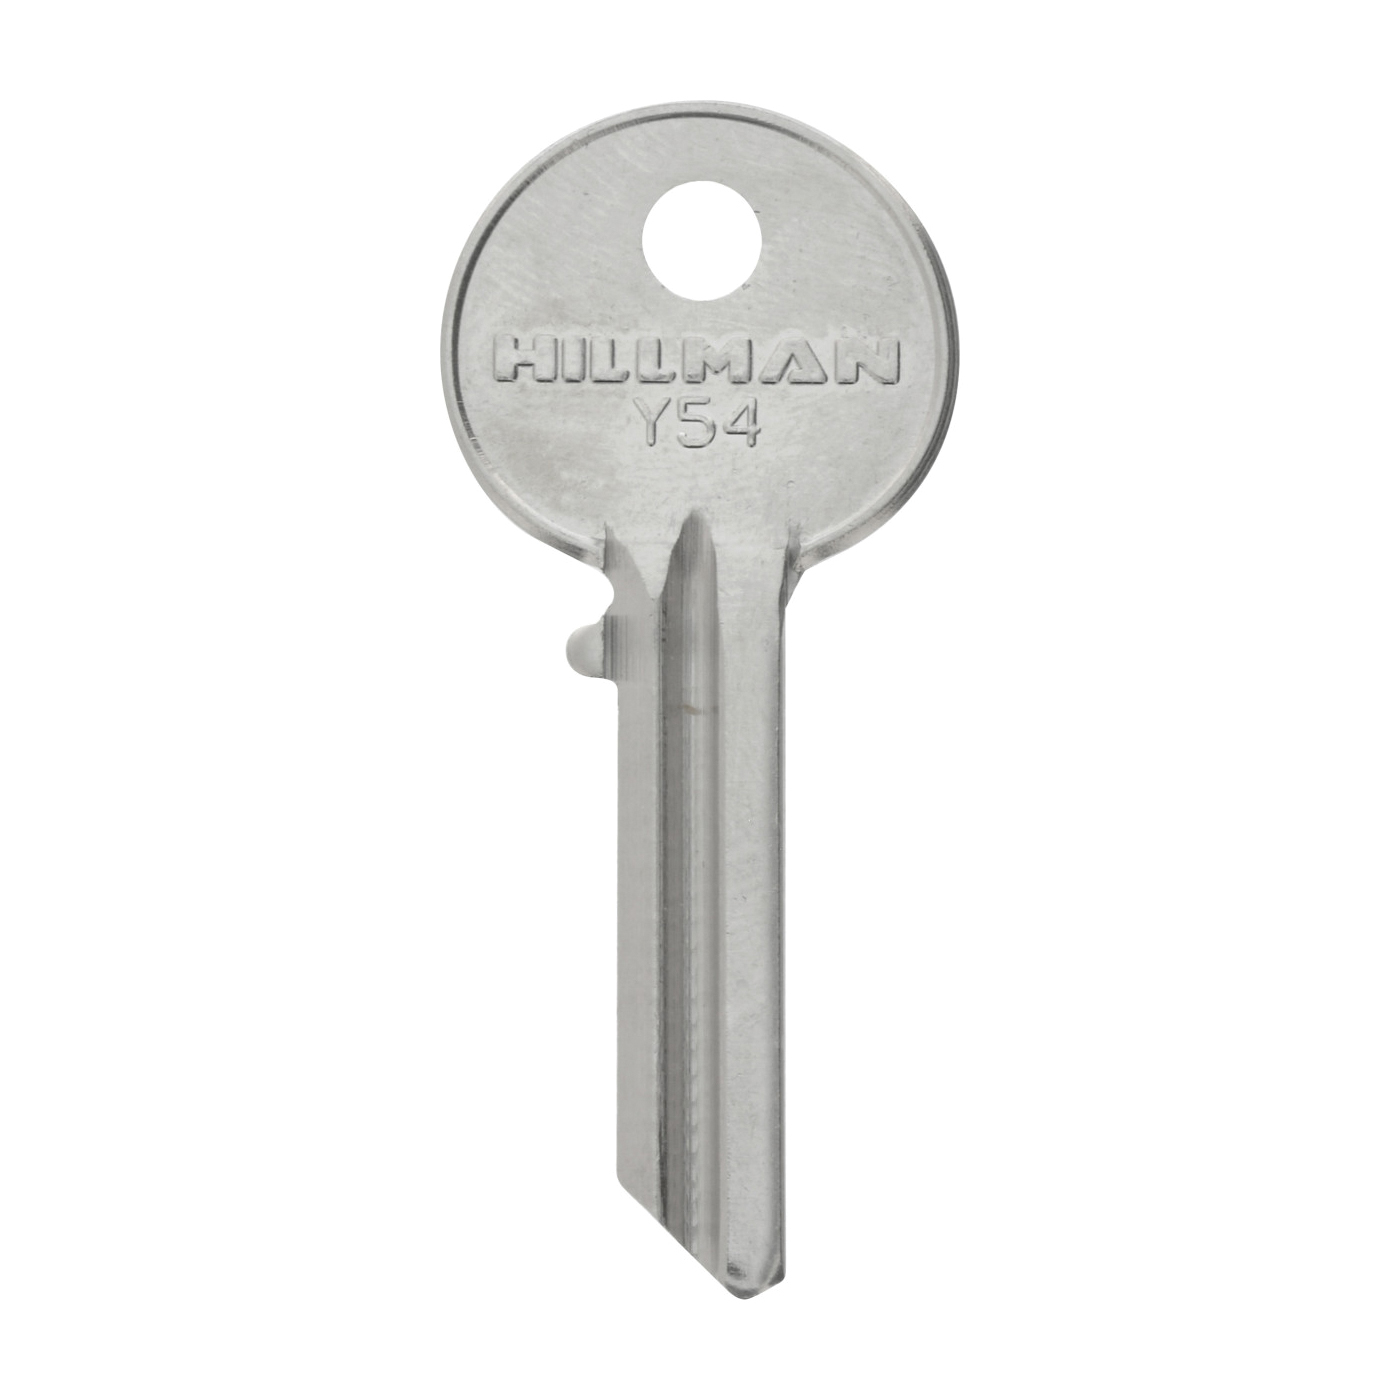 441650 Key, For: Yale Locks